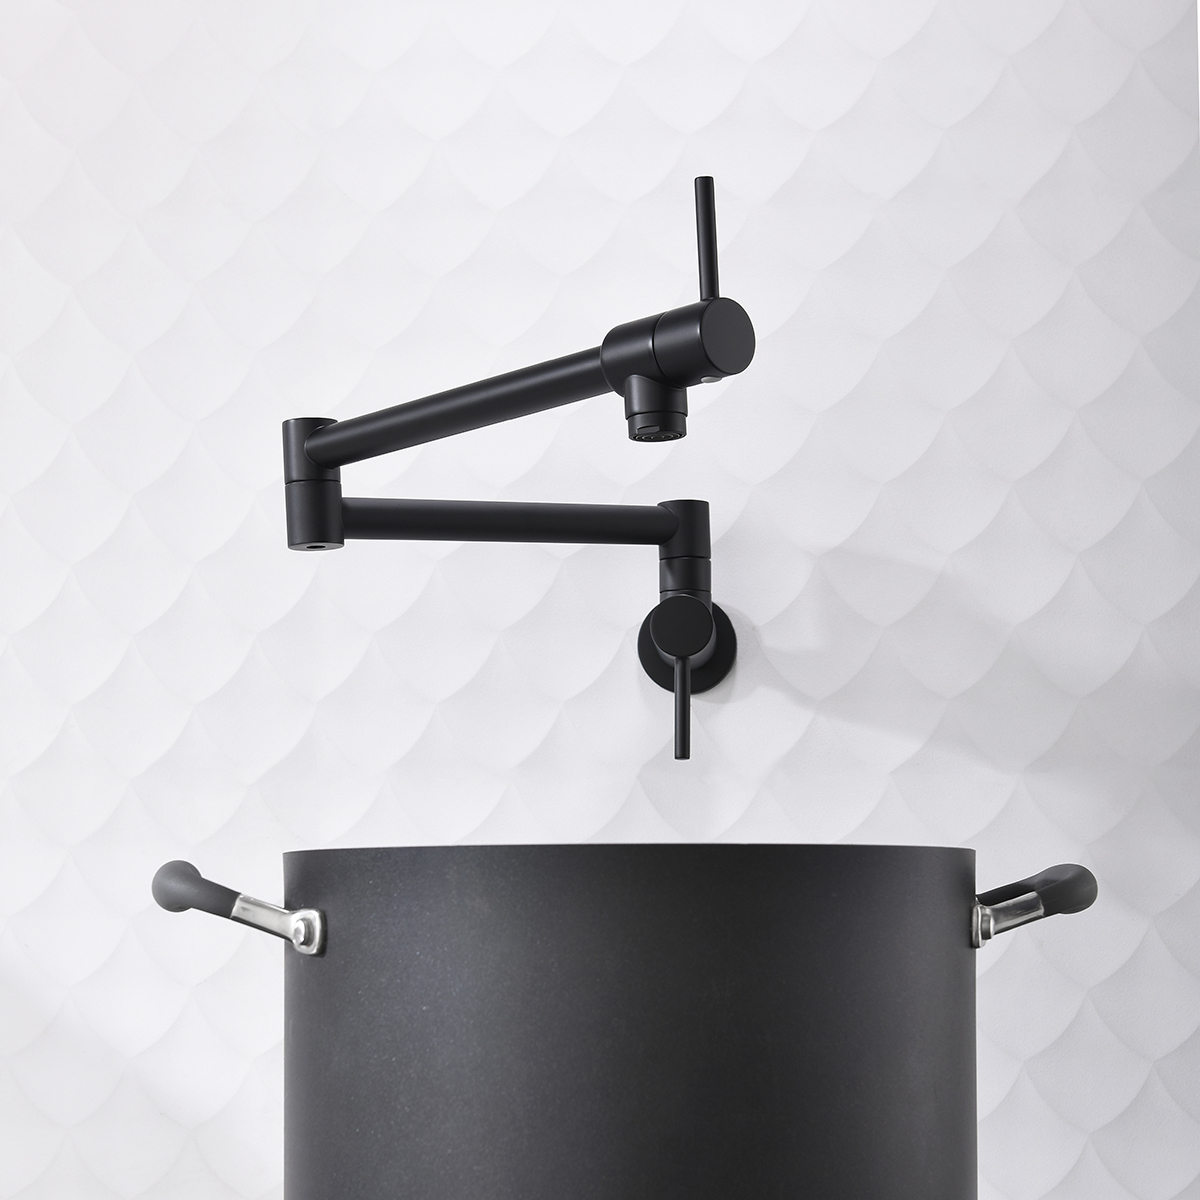 Matt Black Kitchen Pot Filler Faucet Wall Mount Folding Faucet